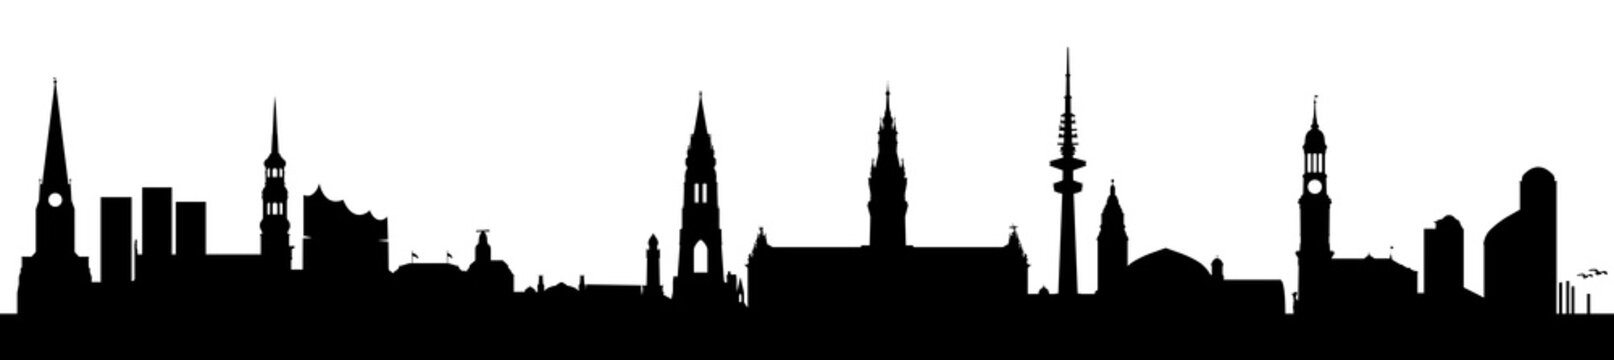 Skyline (Silhouette) Hamburg mit Rathaus, Elbphilharmonie, St. Michaelis, Landungsbrücken etc